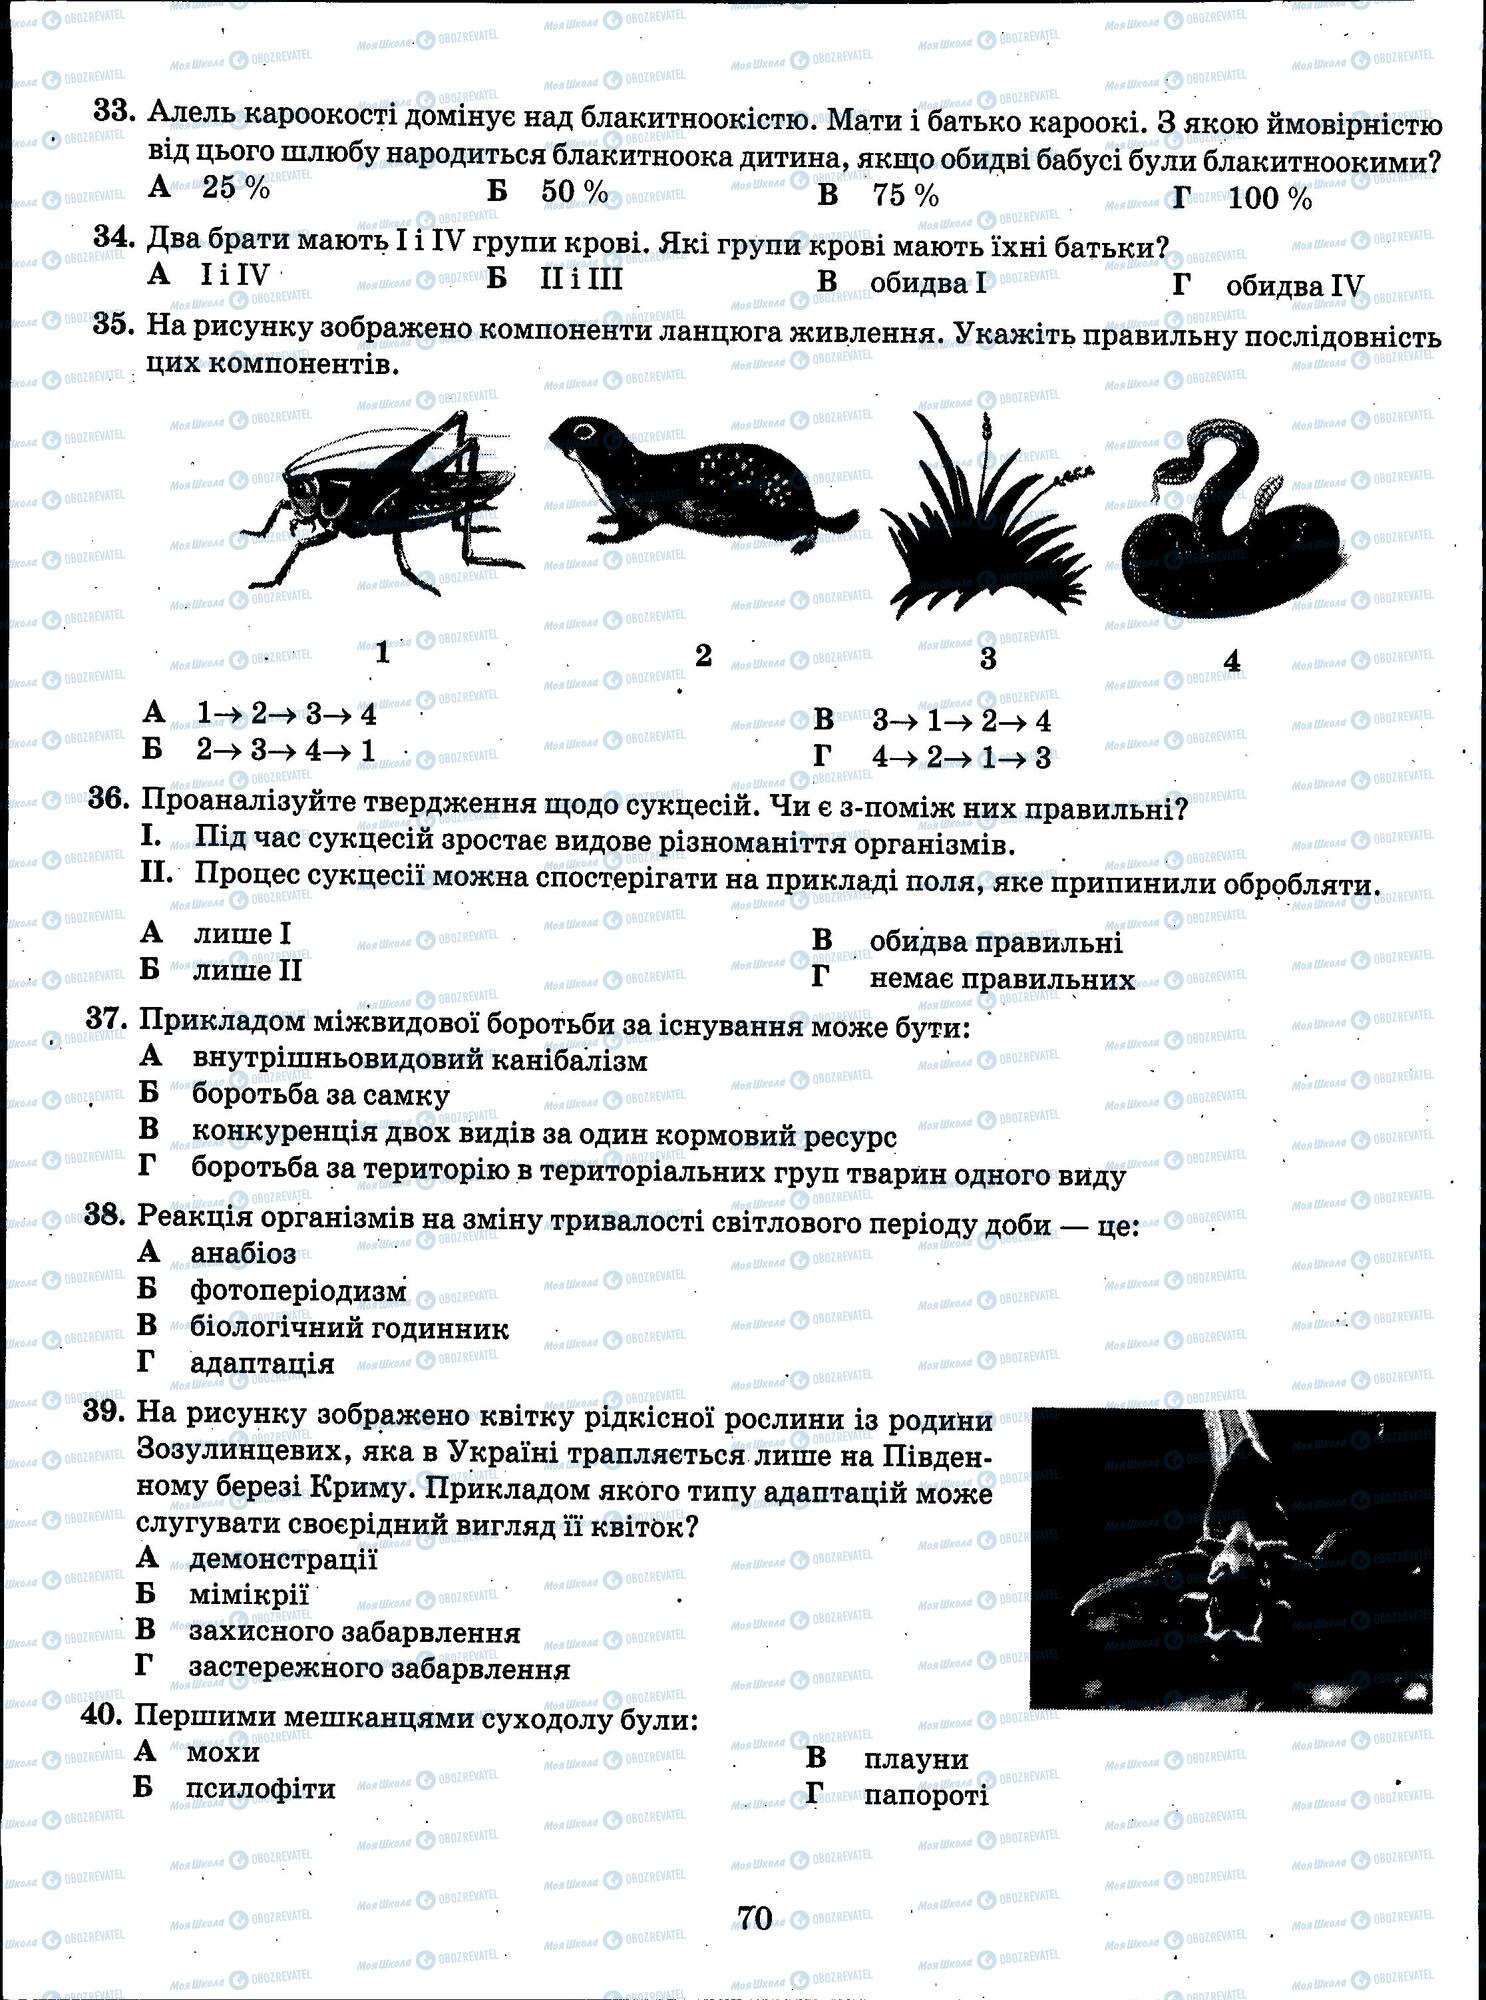 ЗНО Биология 11 класс страница 70